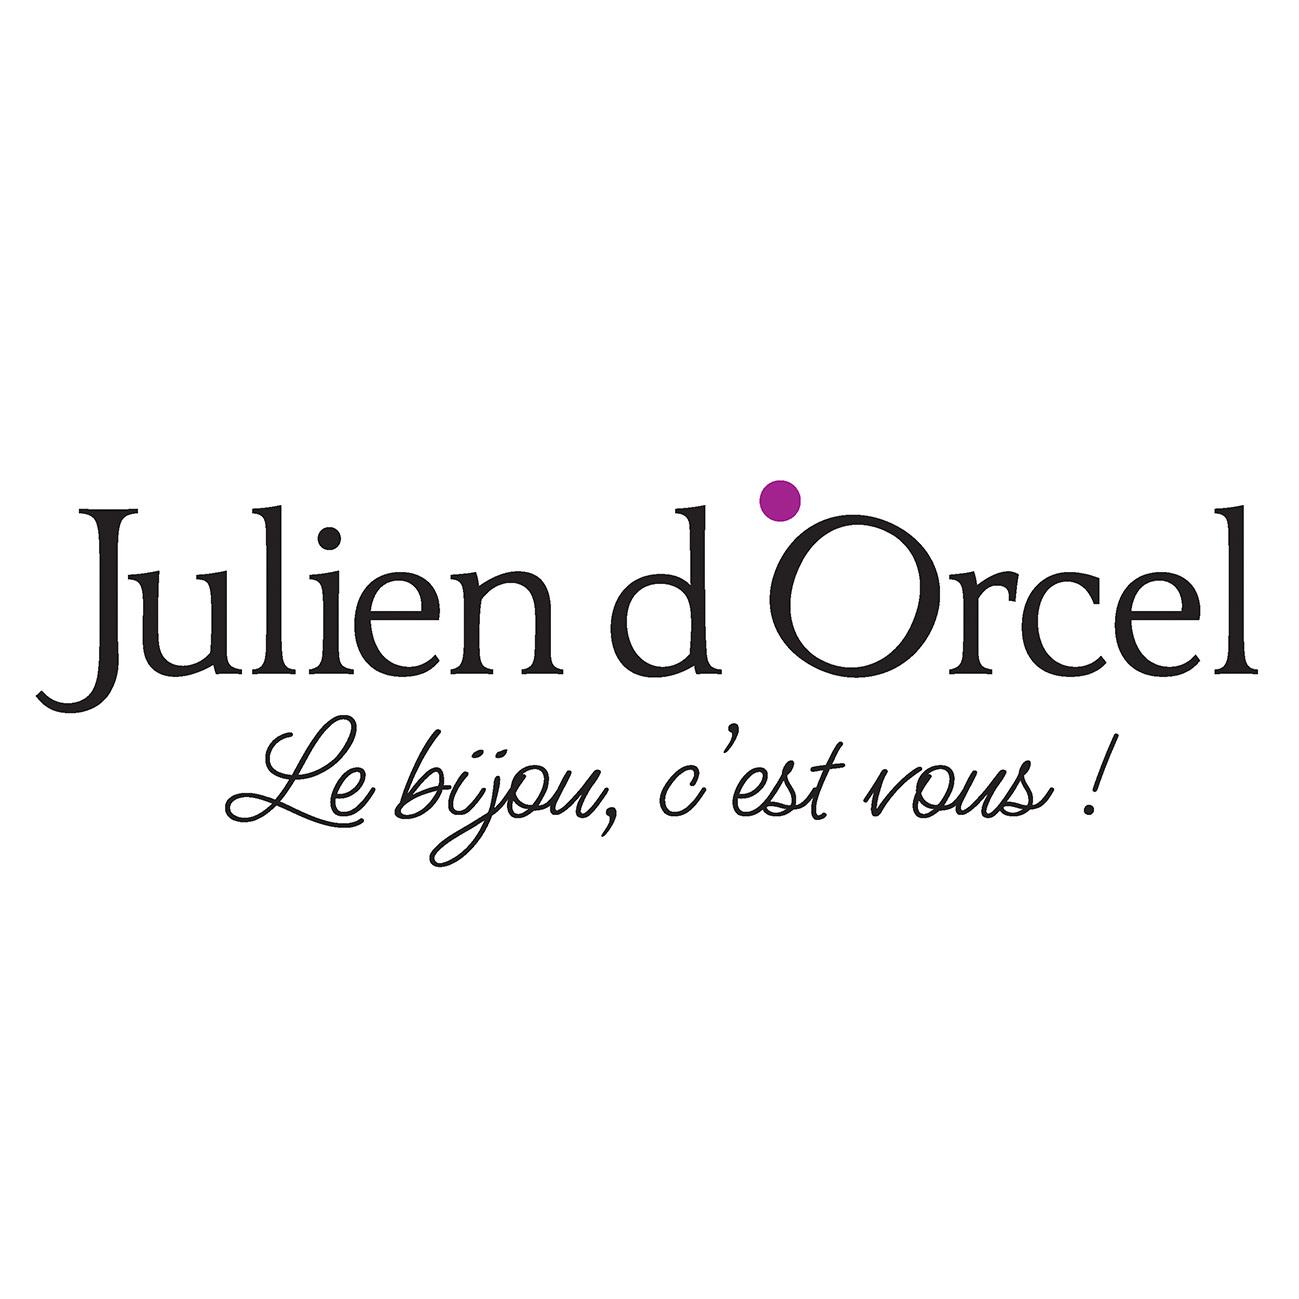 Julien D'orcel Château Thierry